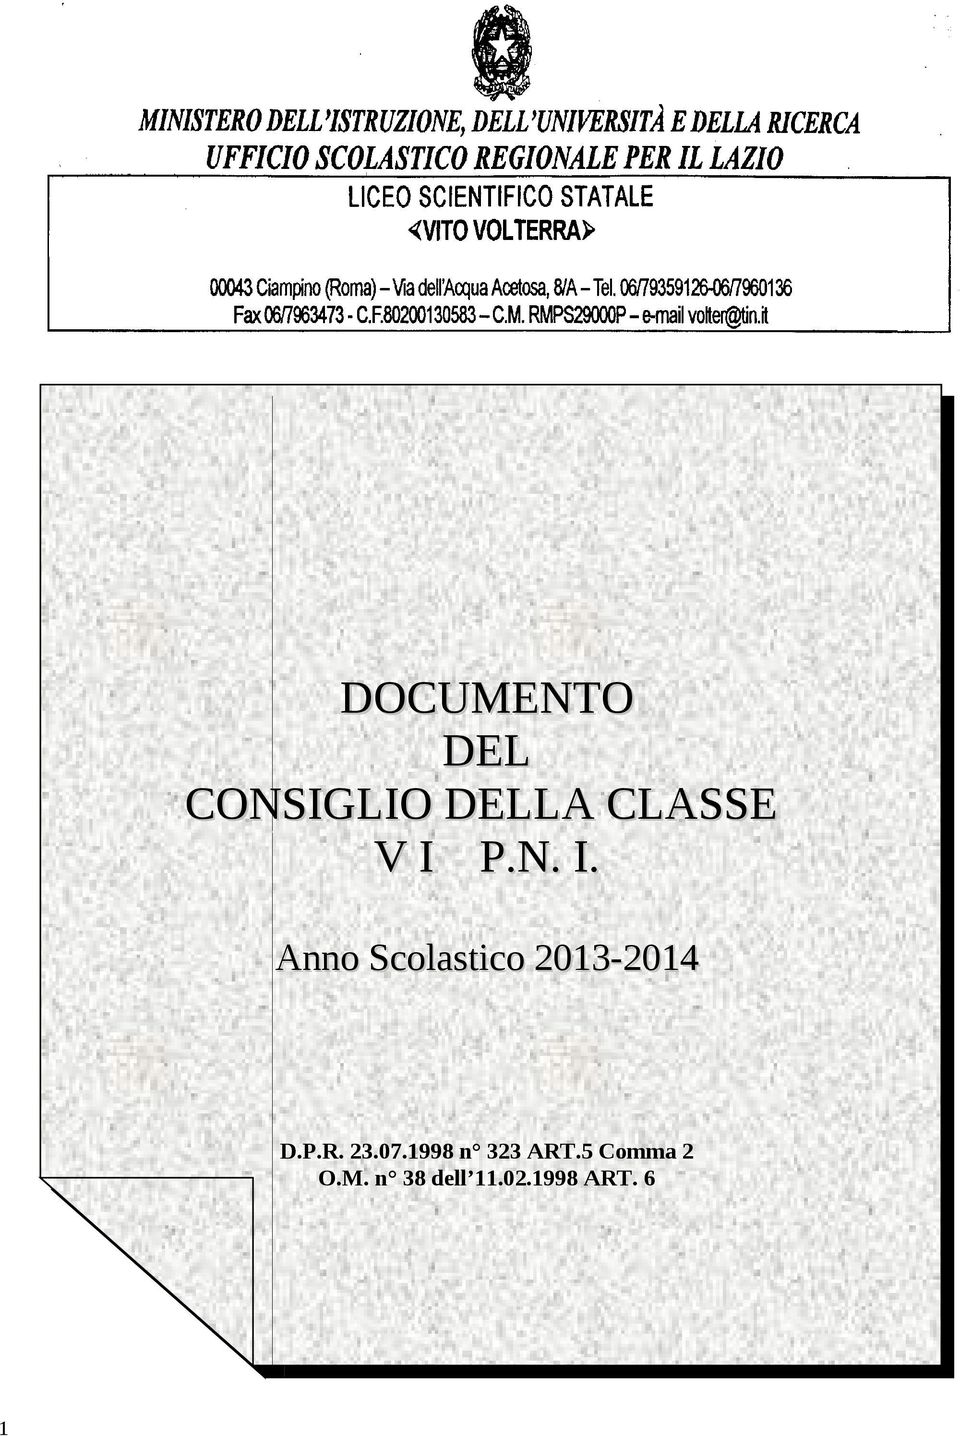 I. Anno Anno Scolastico Scolastico 2013-2014 2013-2014 D.P.R. 23.